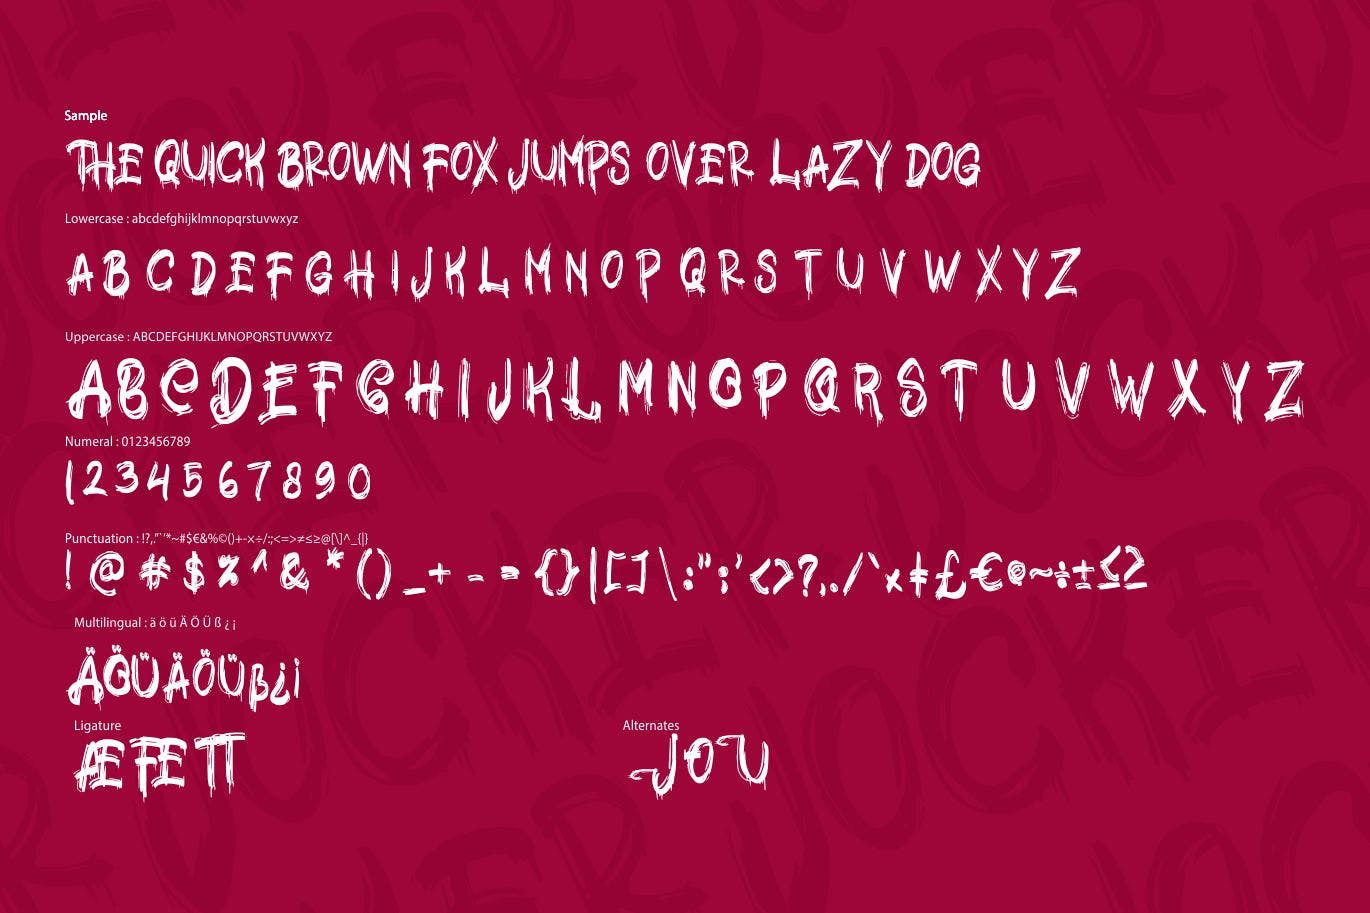 极具个性的英文笔刷装饰字体蚂蚁素材精选 Jocker | Psychotype Font Theme插图(5)